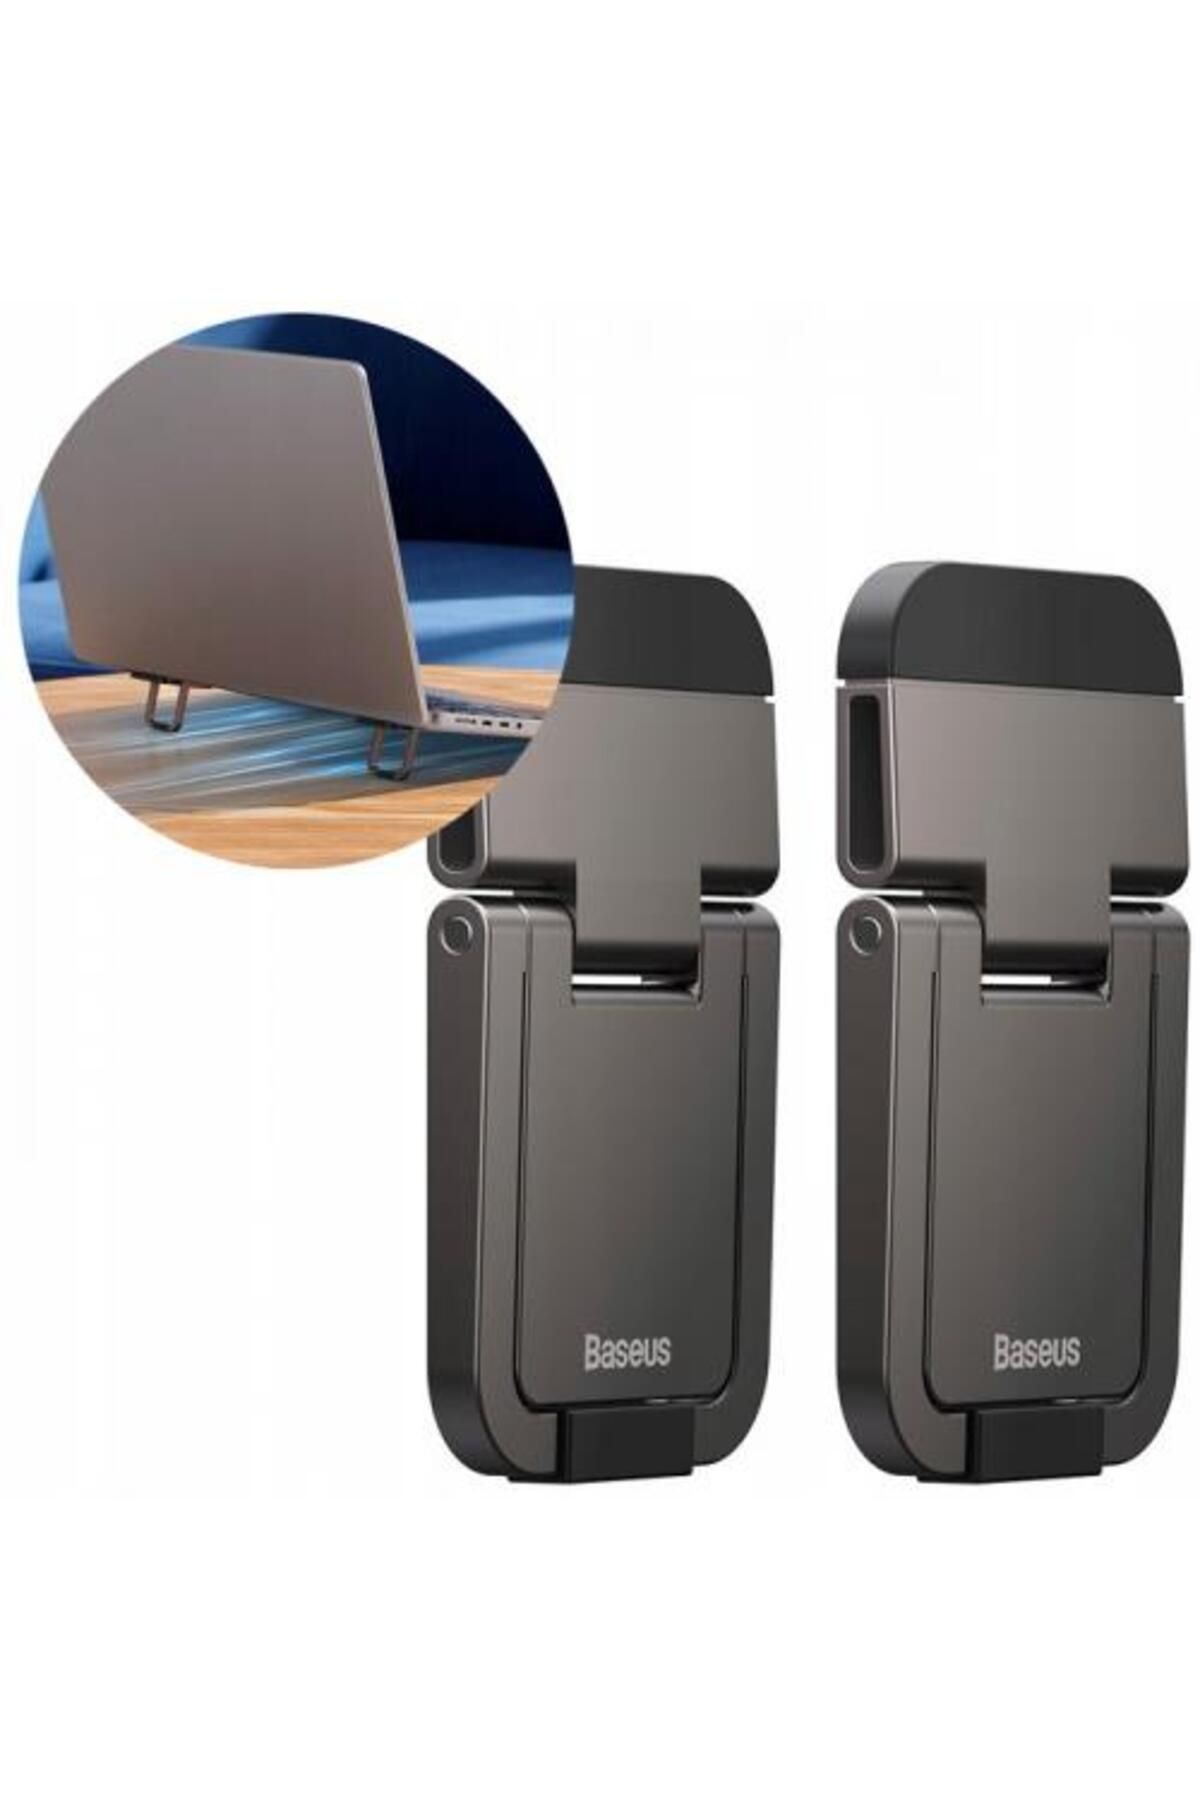 Baseus Çinko Alaşım 2 Adet Set 5mm Yükseklik Ayarlı Laptop Standı Macbook Notebook Ipad Stand Ayağı